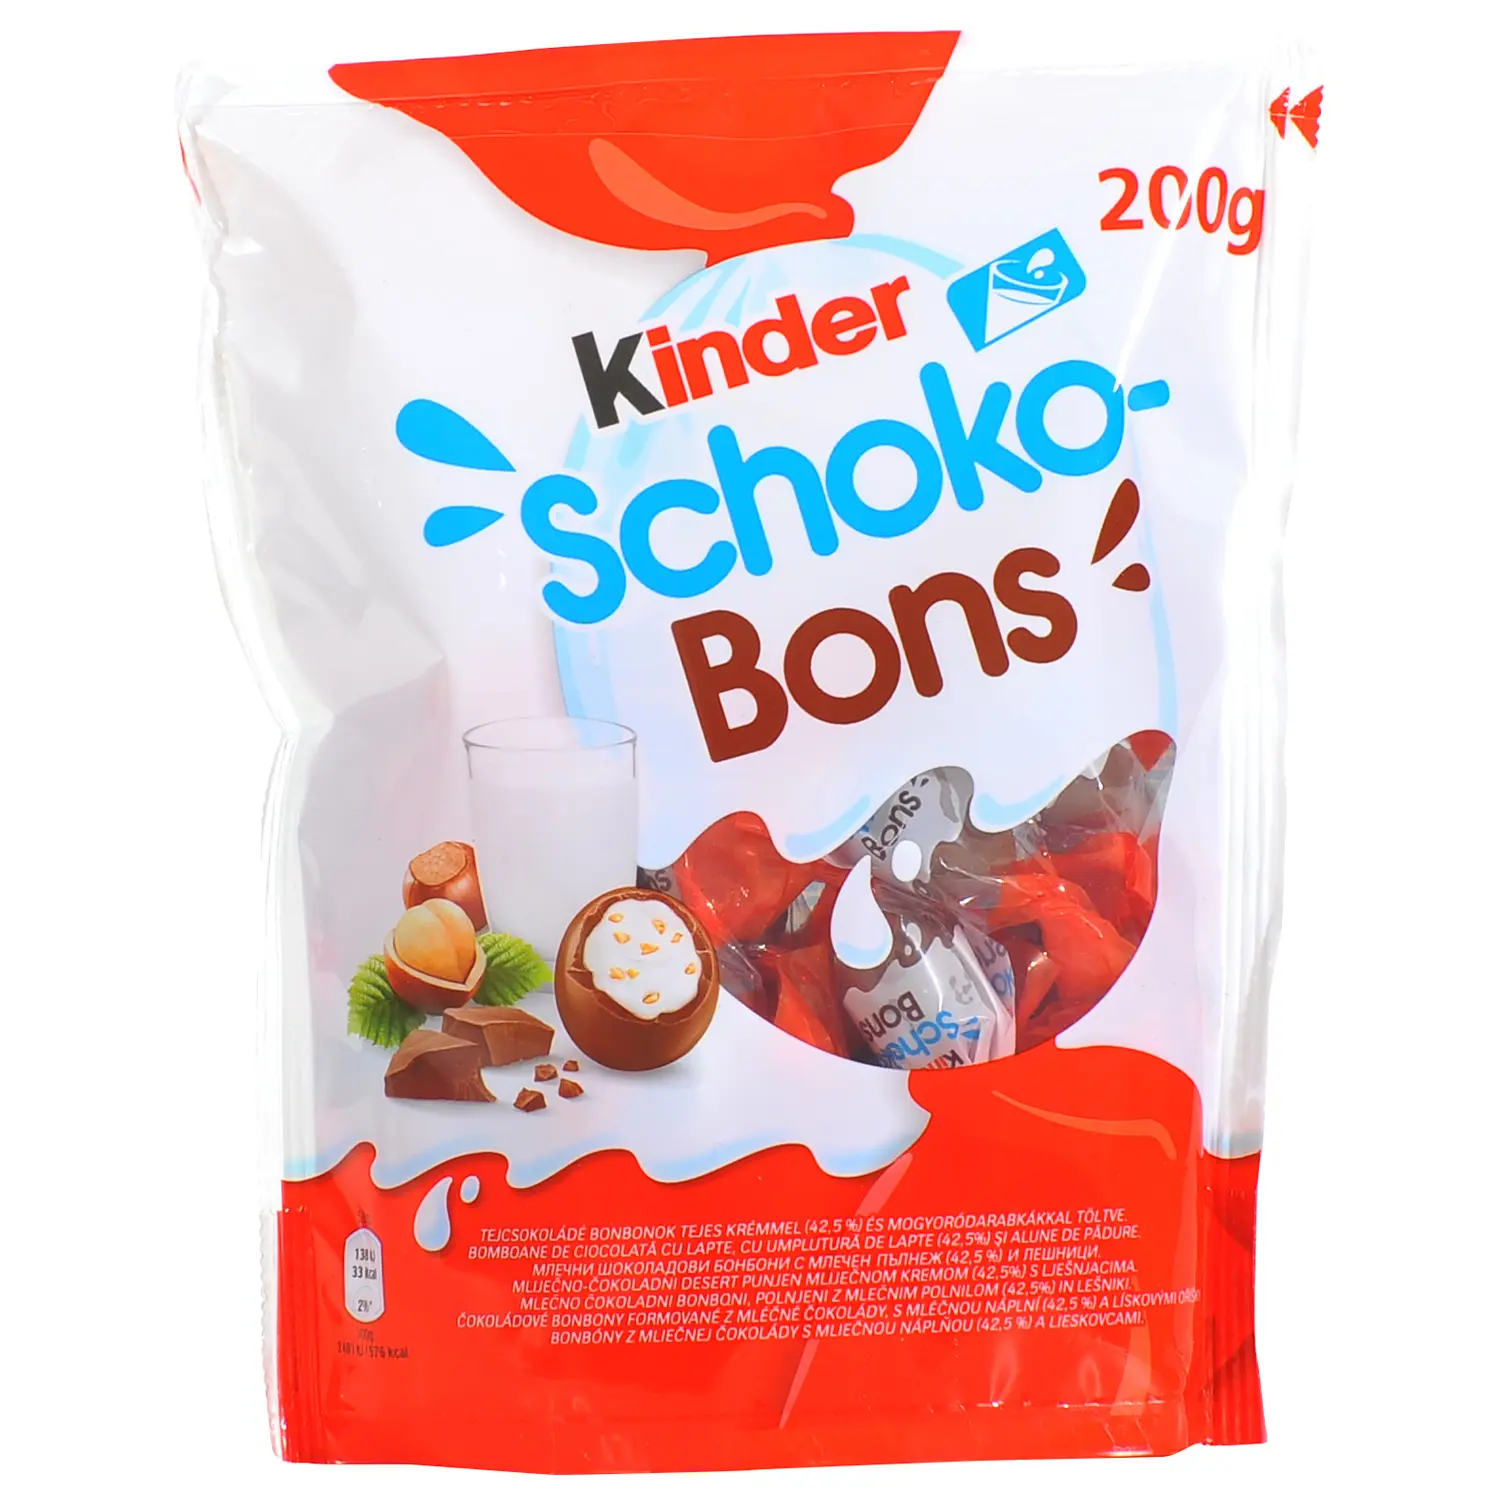 Kinder Schoko- Kinder Schoko Bons-deliziose palline croccanti con pezzi di nocciola e ricoperte da uno strato di cioccolato.